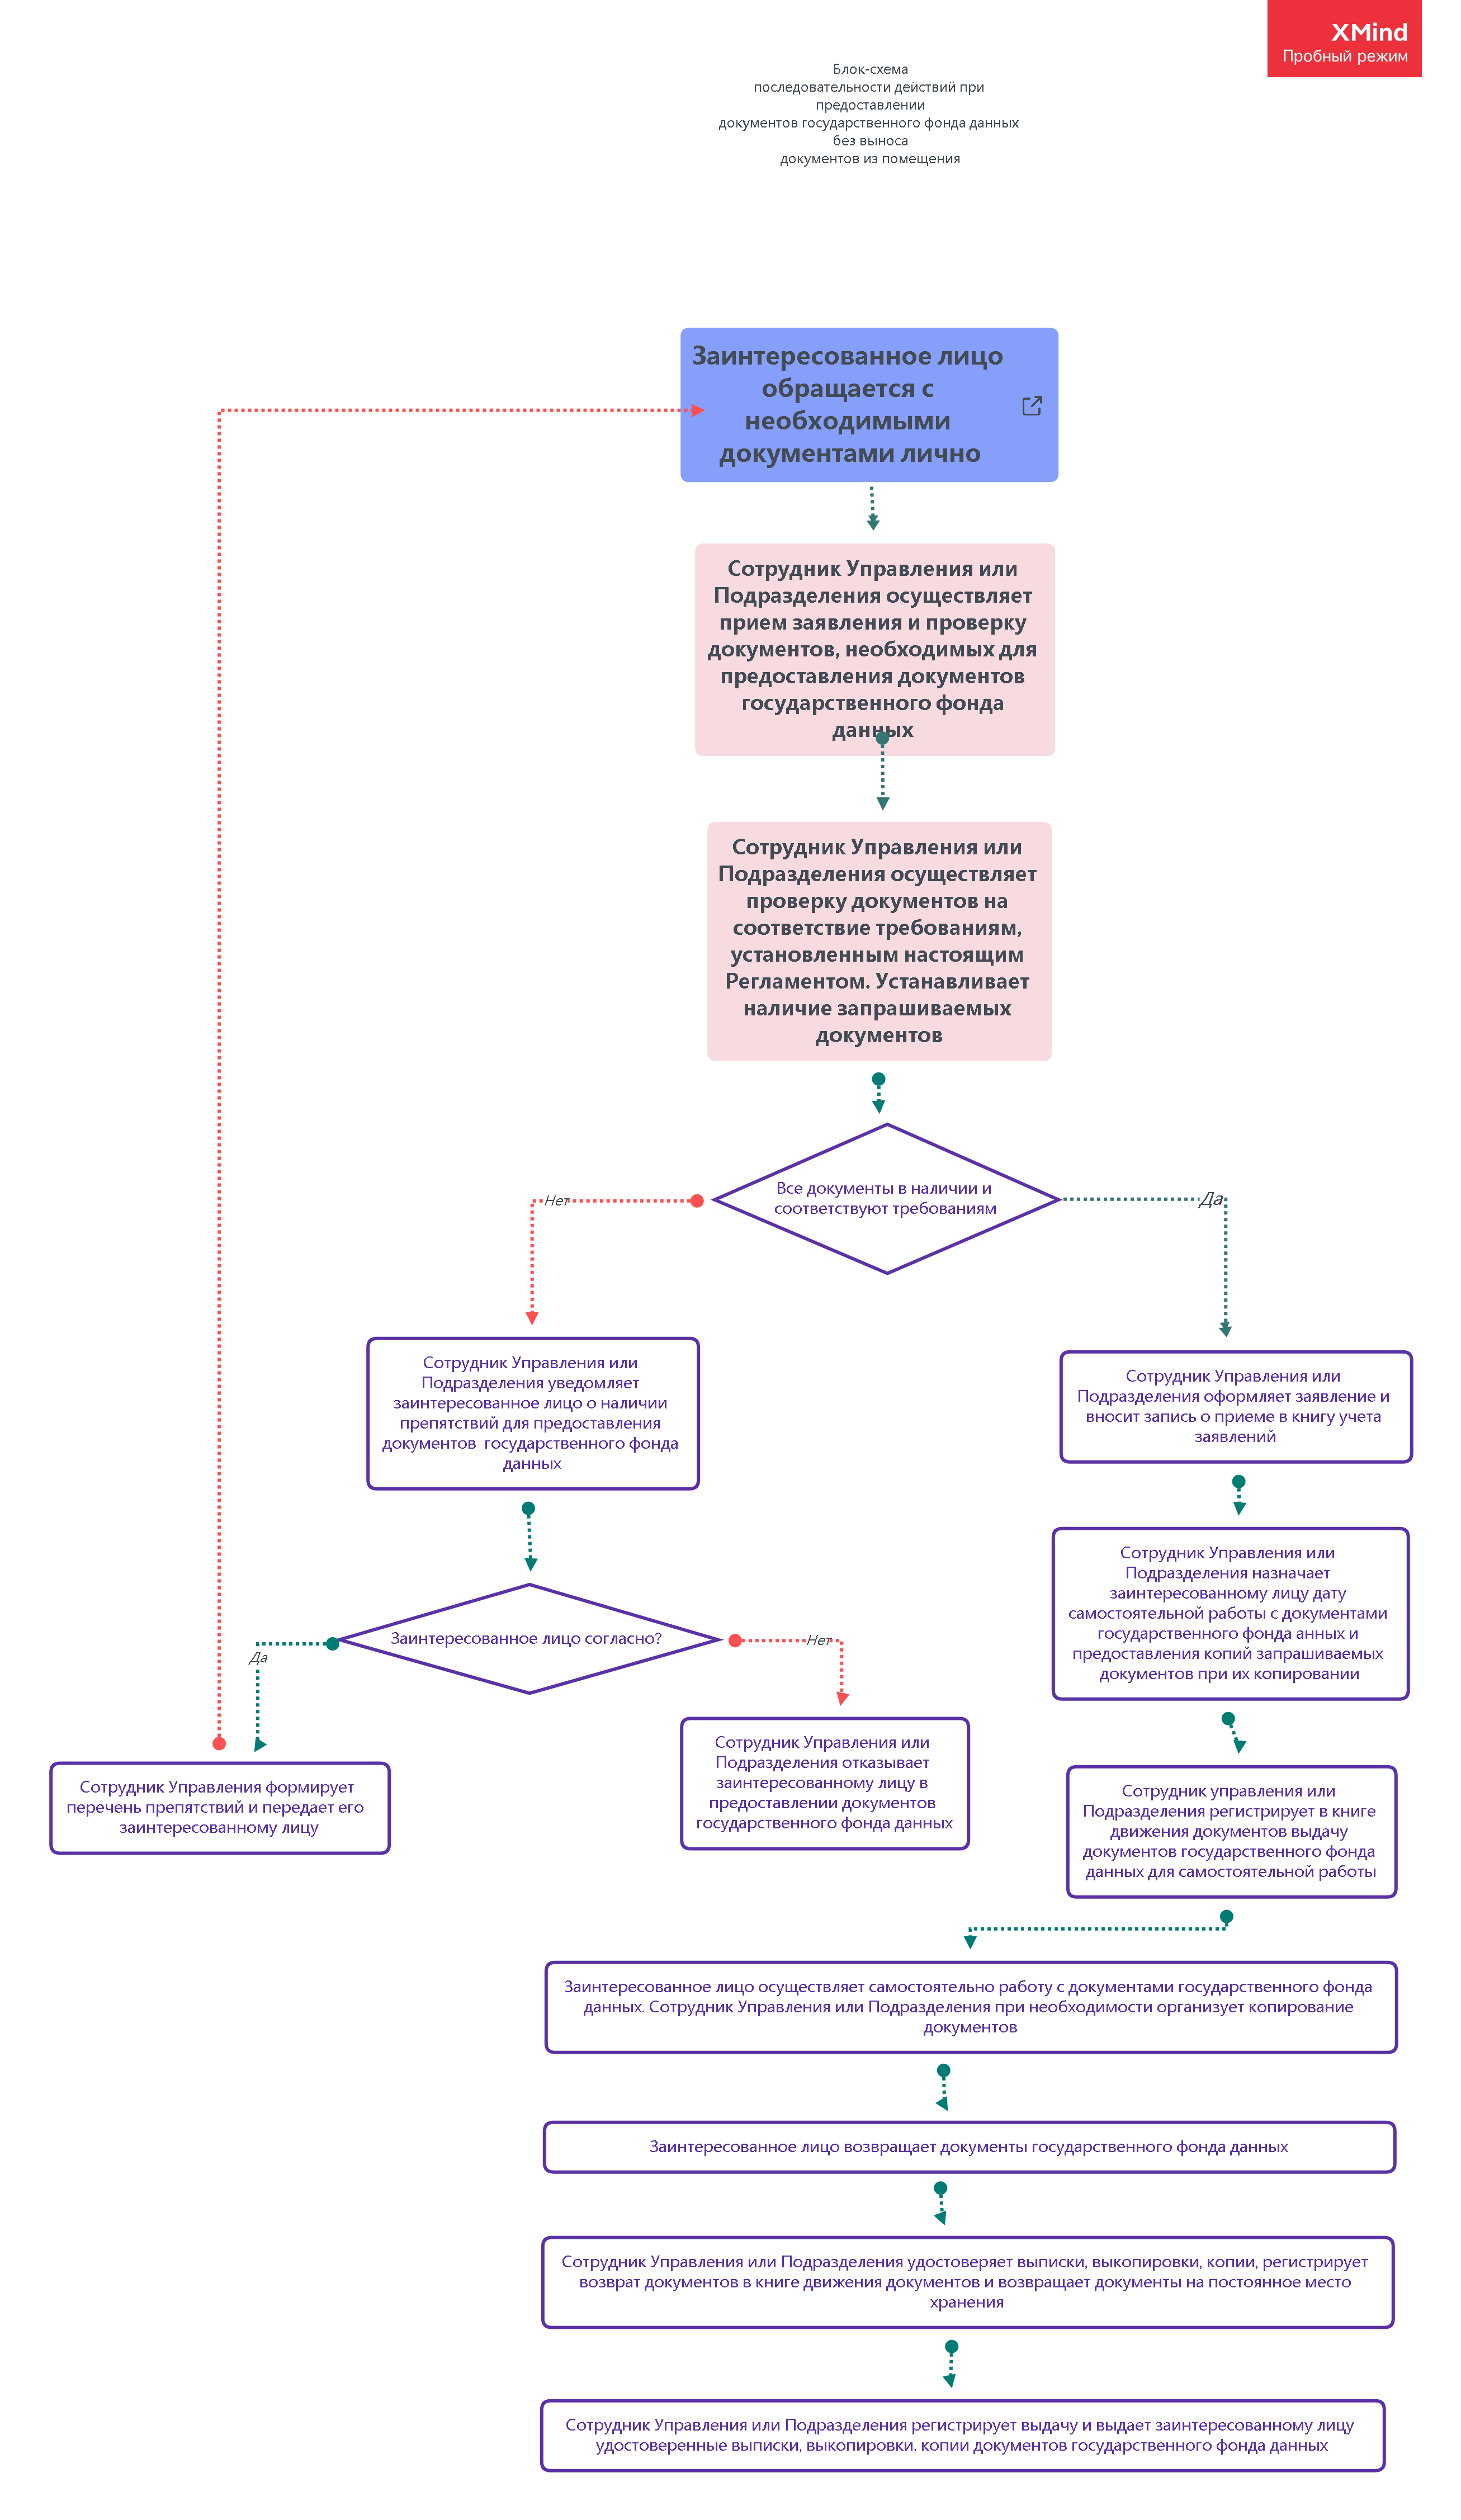 Блок-схема последовательности действий при предоставлении документов государственного фонда данных без выноса документов из помещения